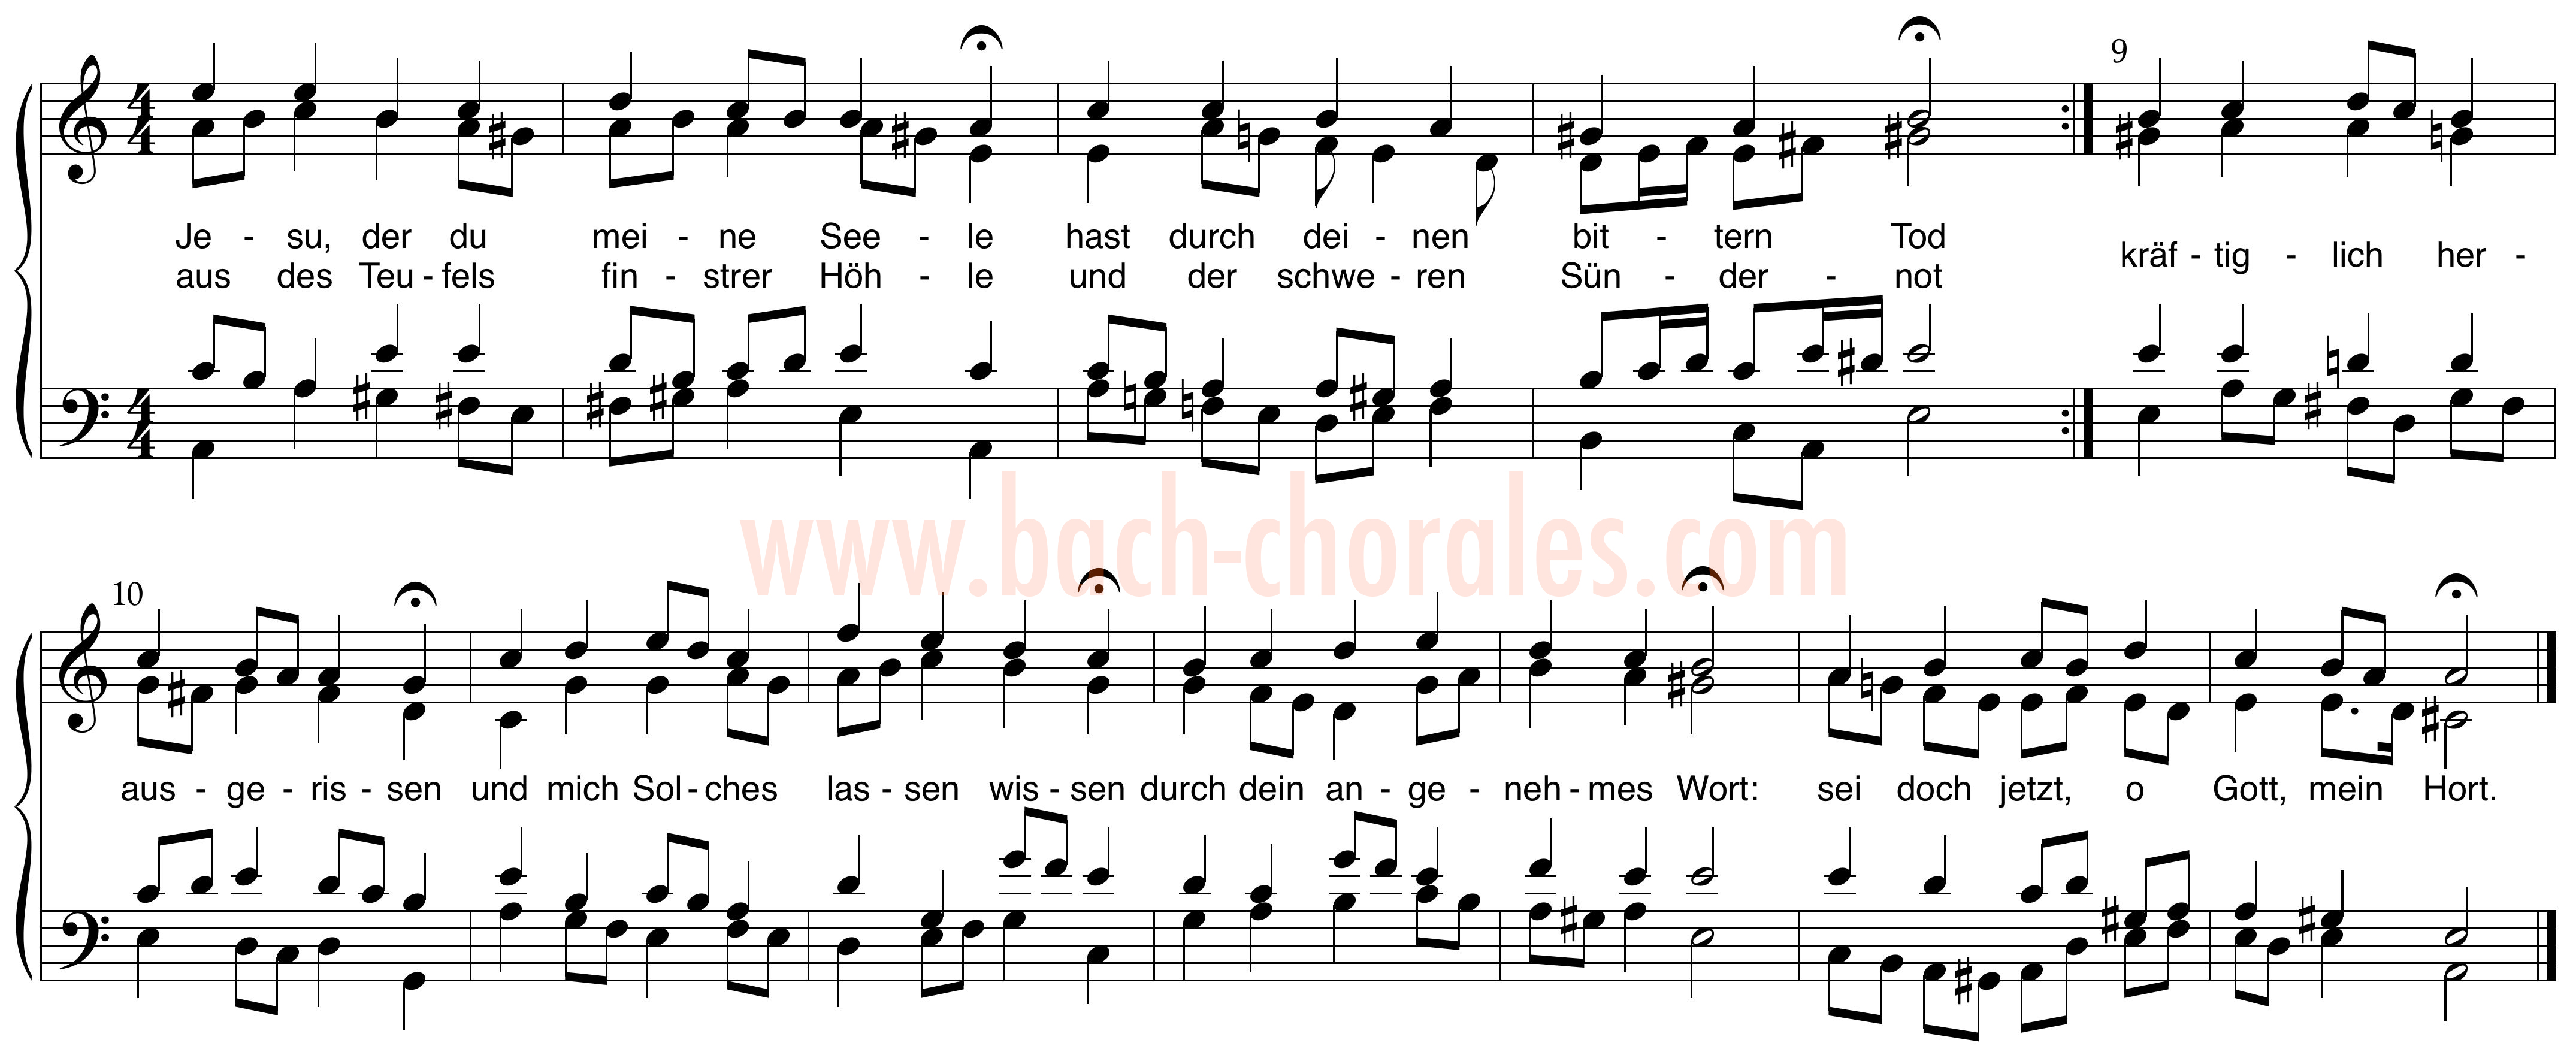 notenbeeld BWV 352 op https://www.bach-chorales.com/